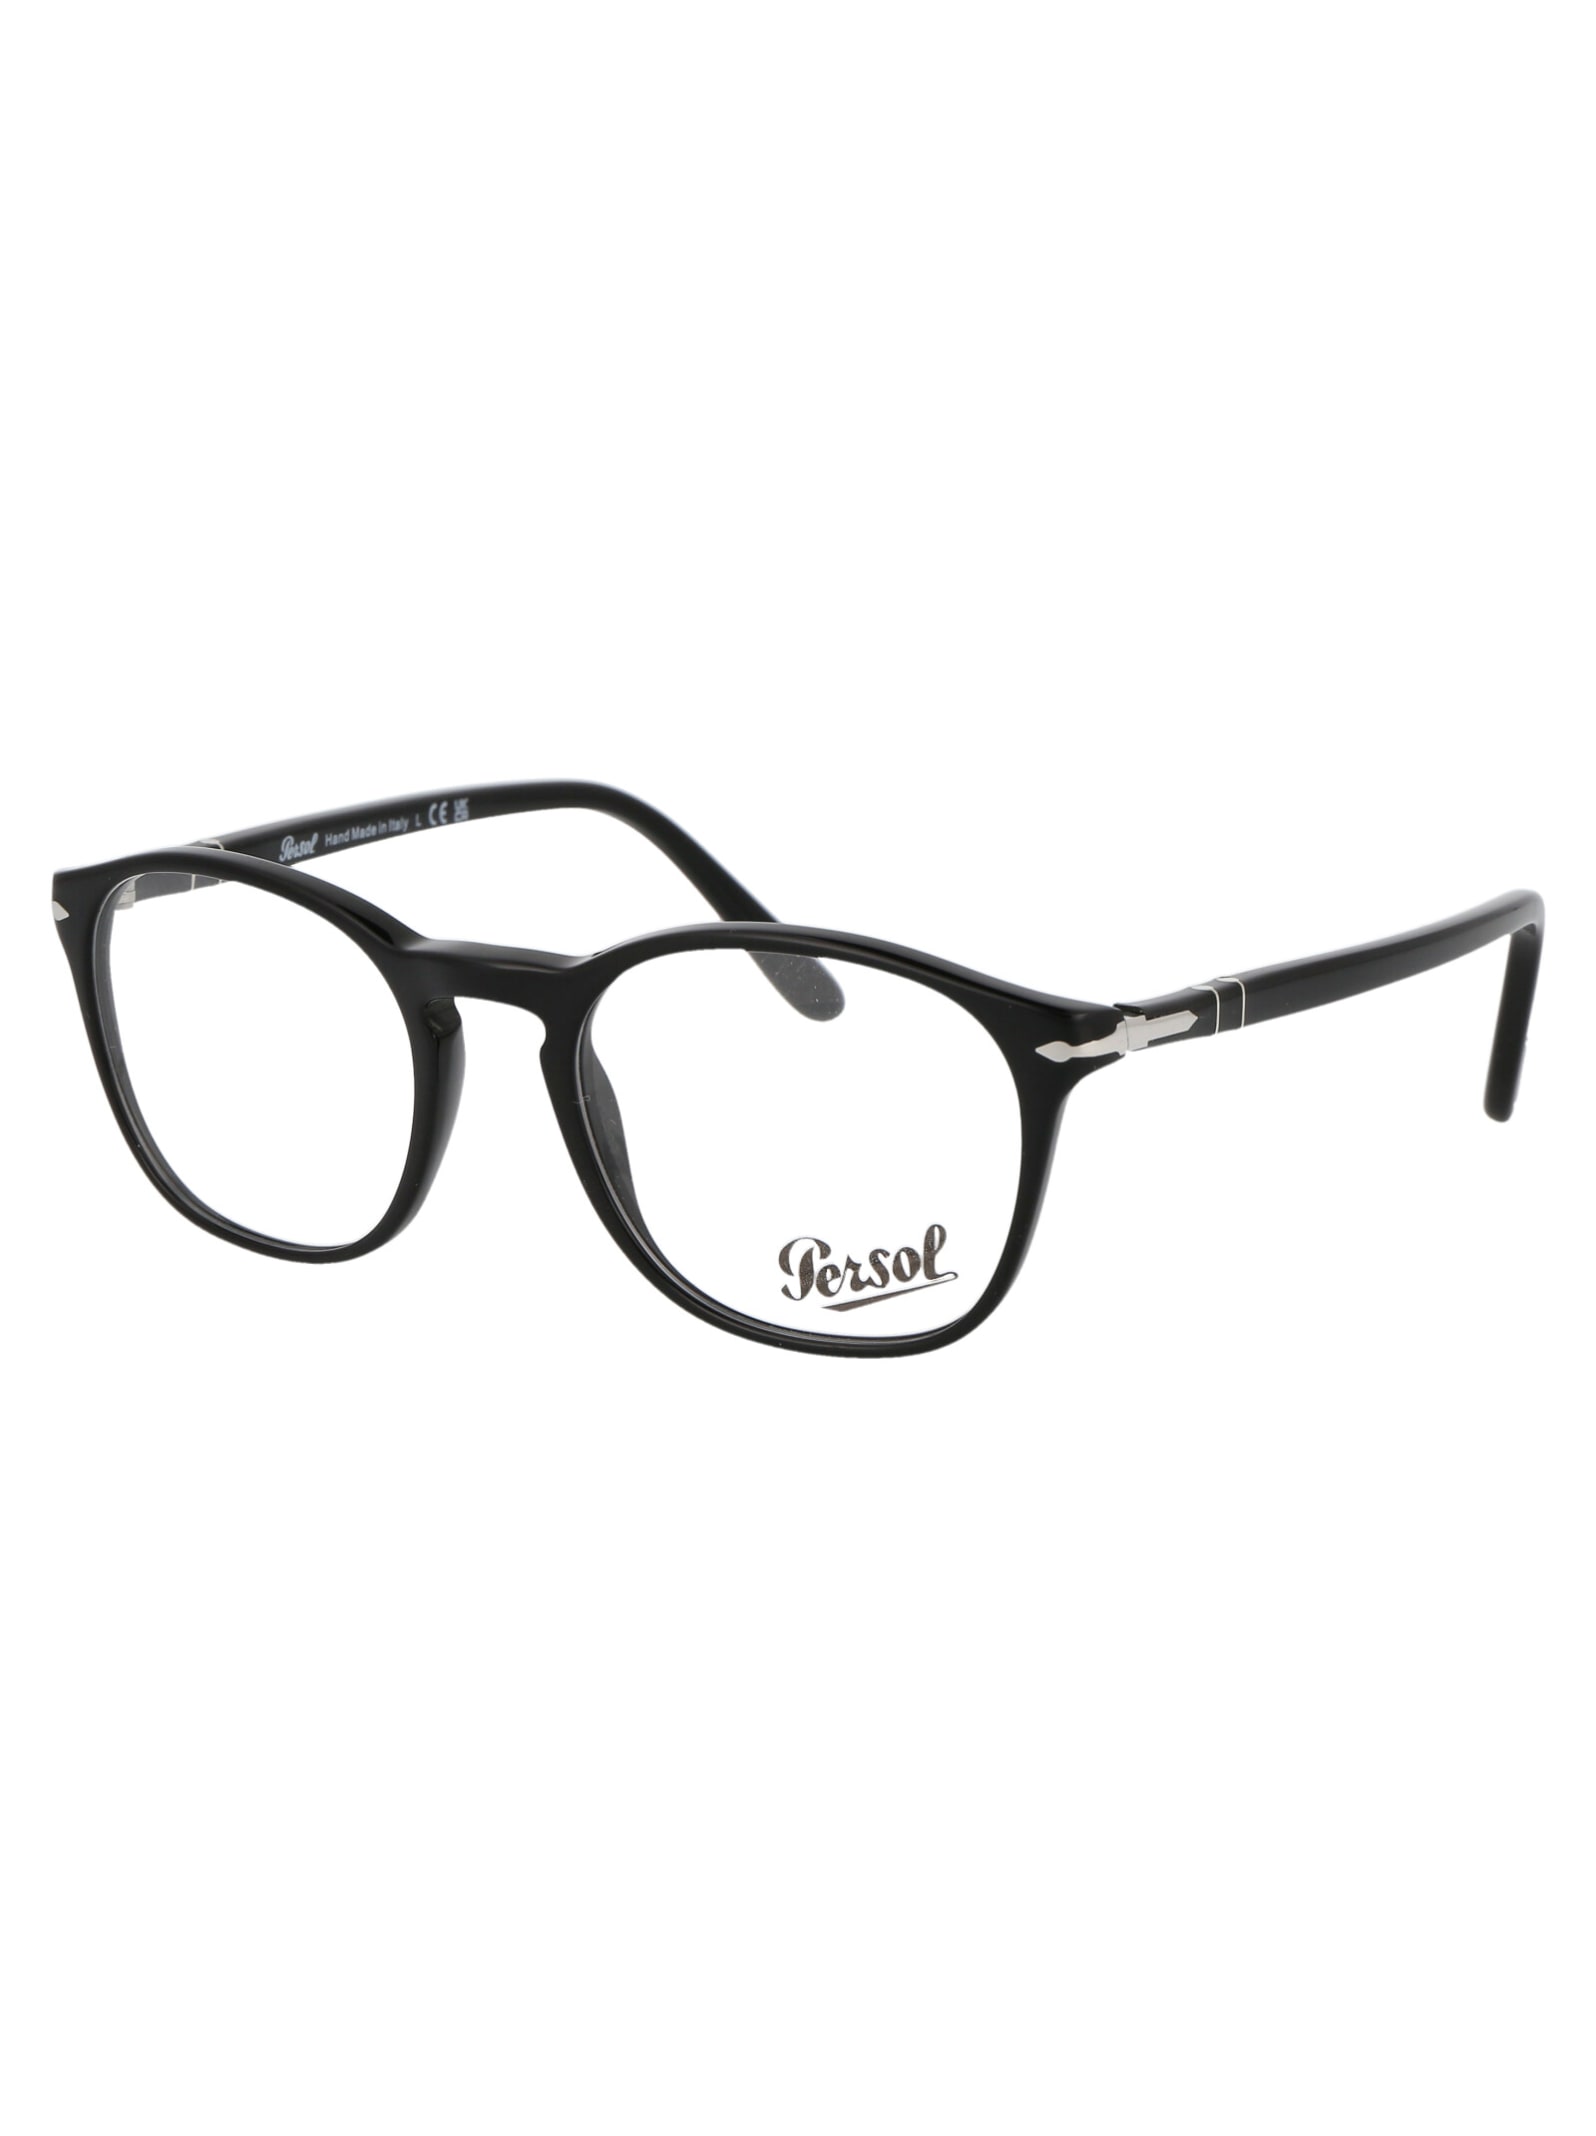 Persol 0po3007v Glasses | Smart Closet